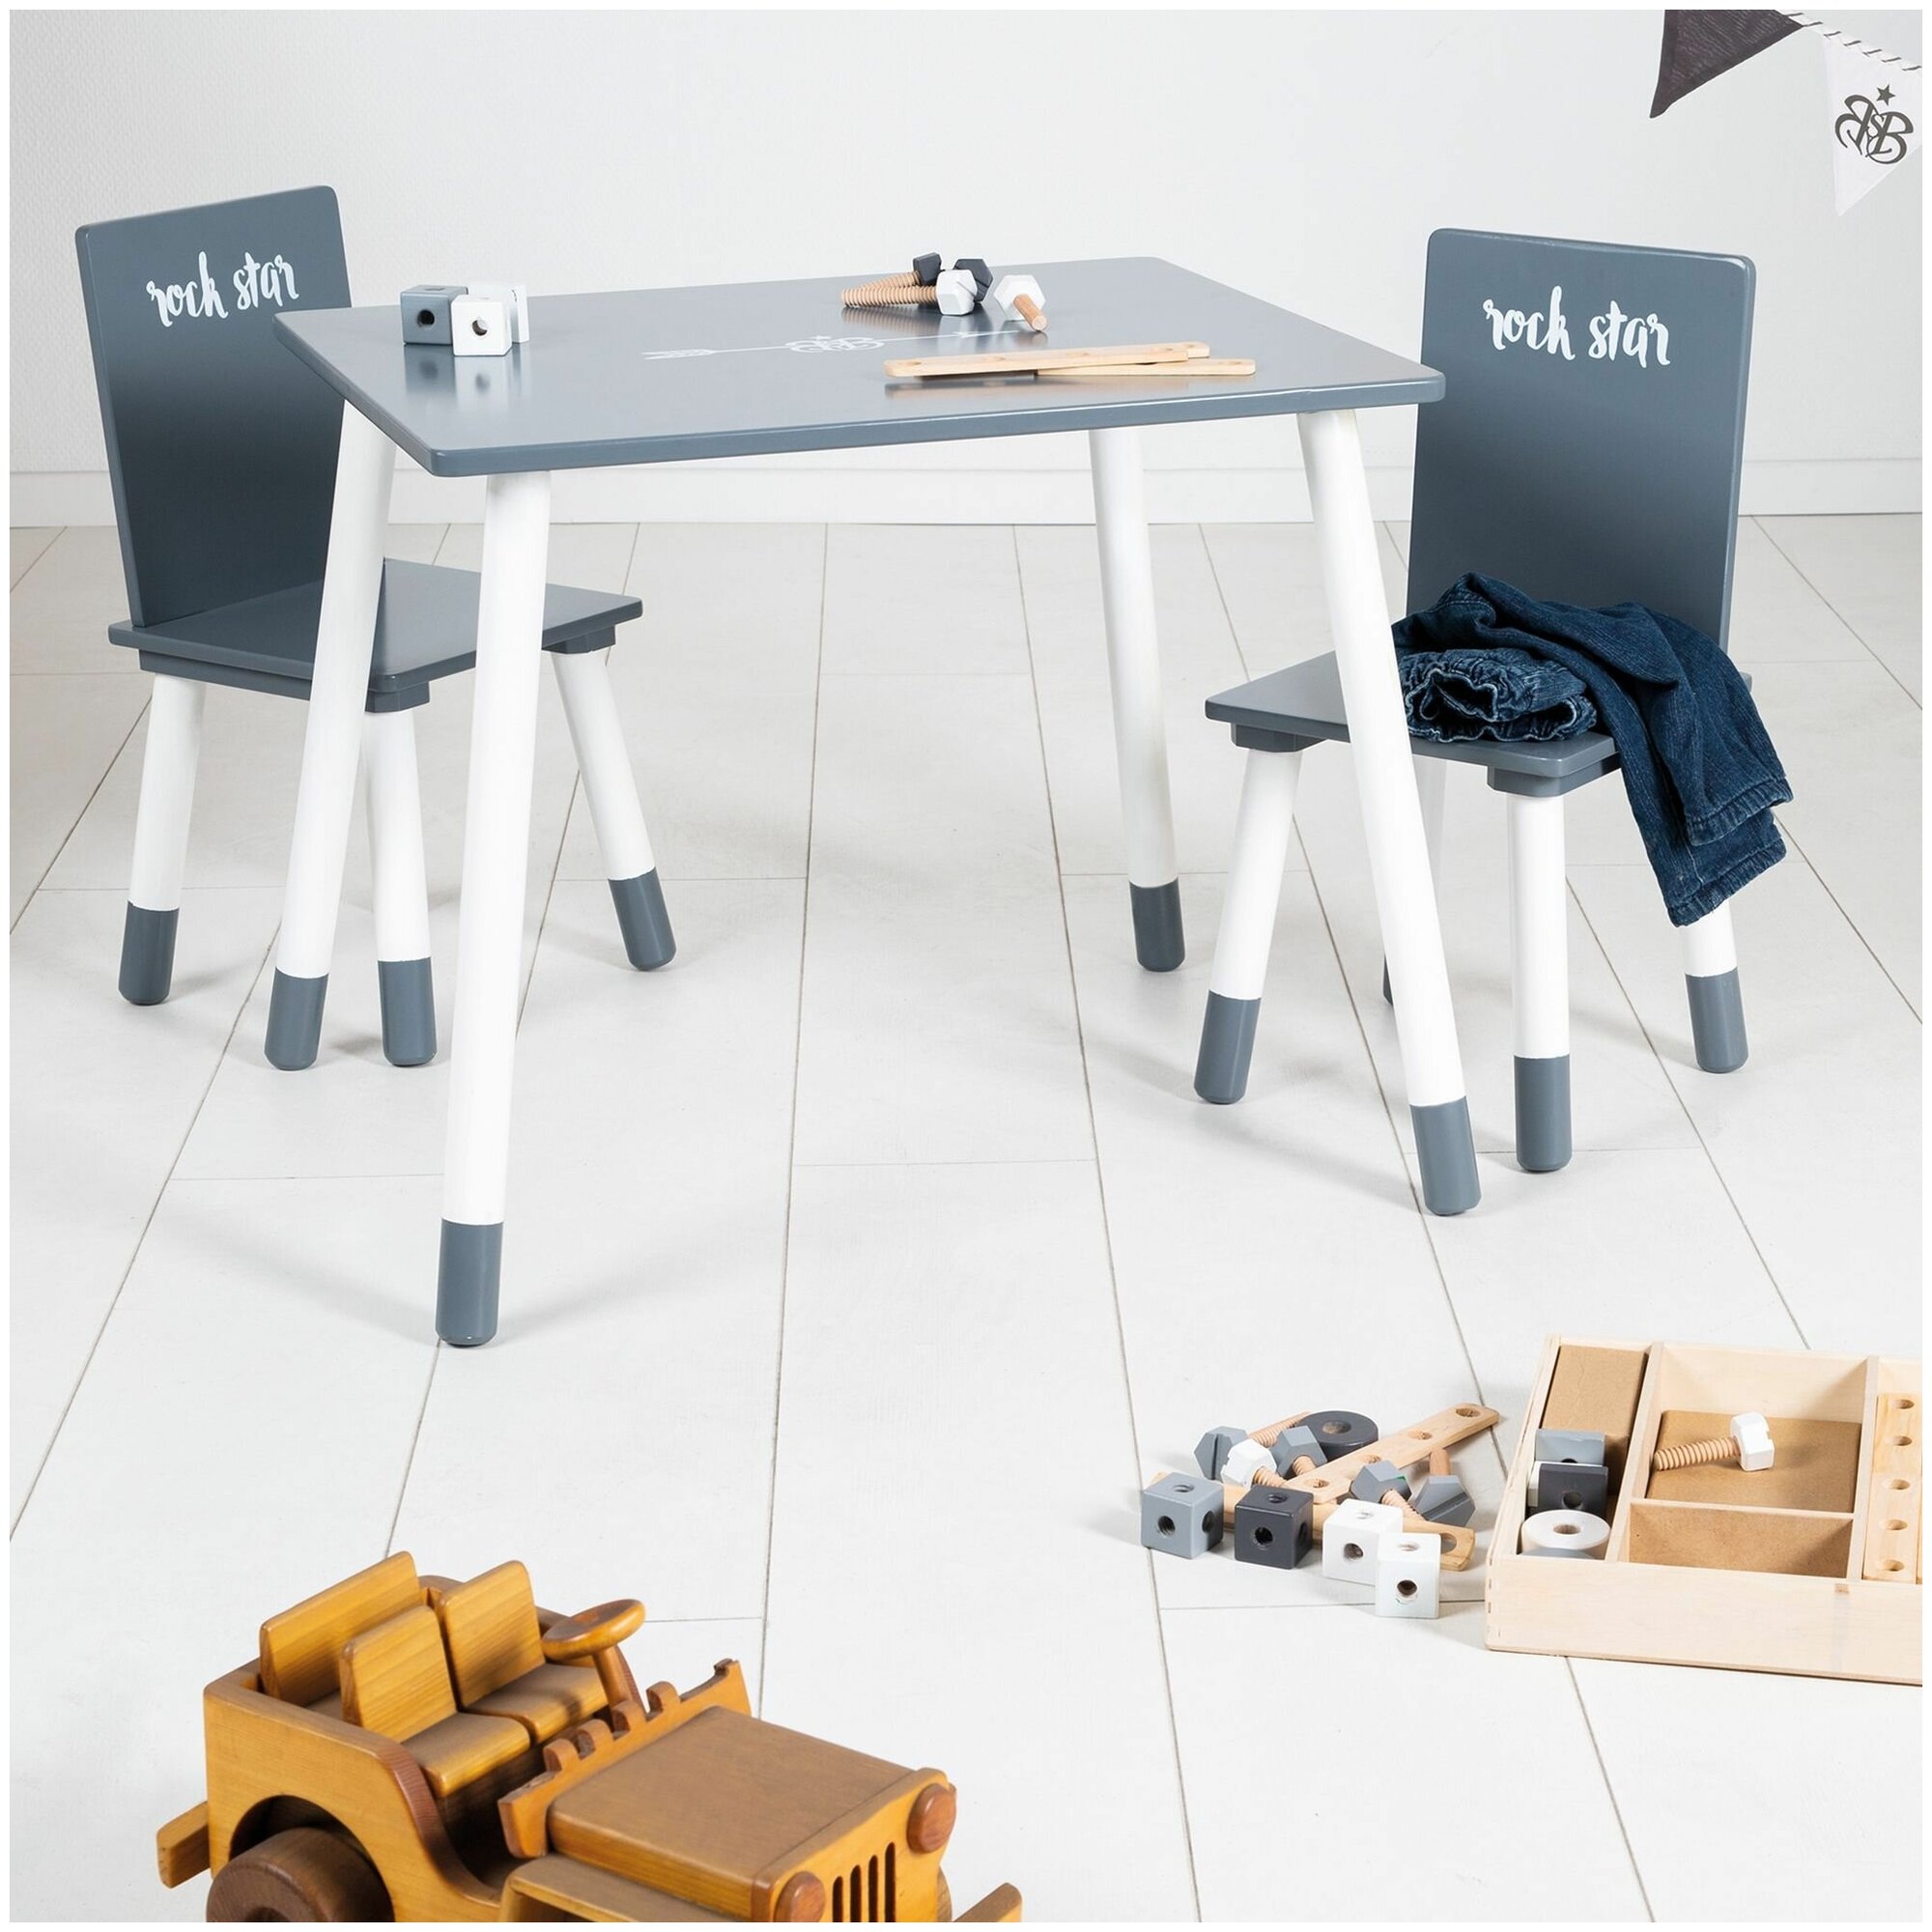 Детский стол и стул Roba Комплект детской деревянной мебели Rock Star Baby: стол + 2 стульчика, серый/белый